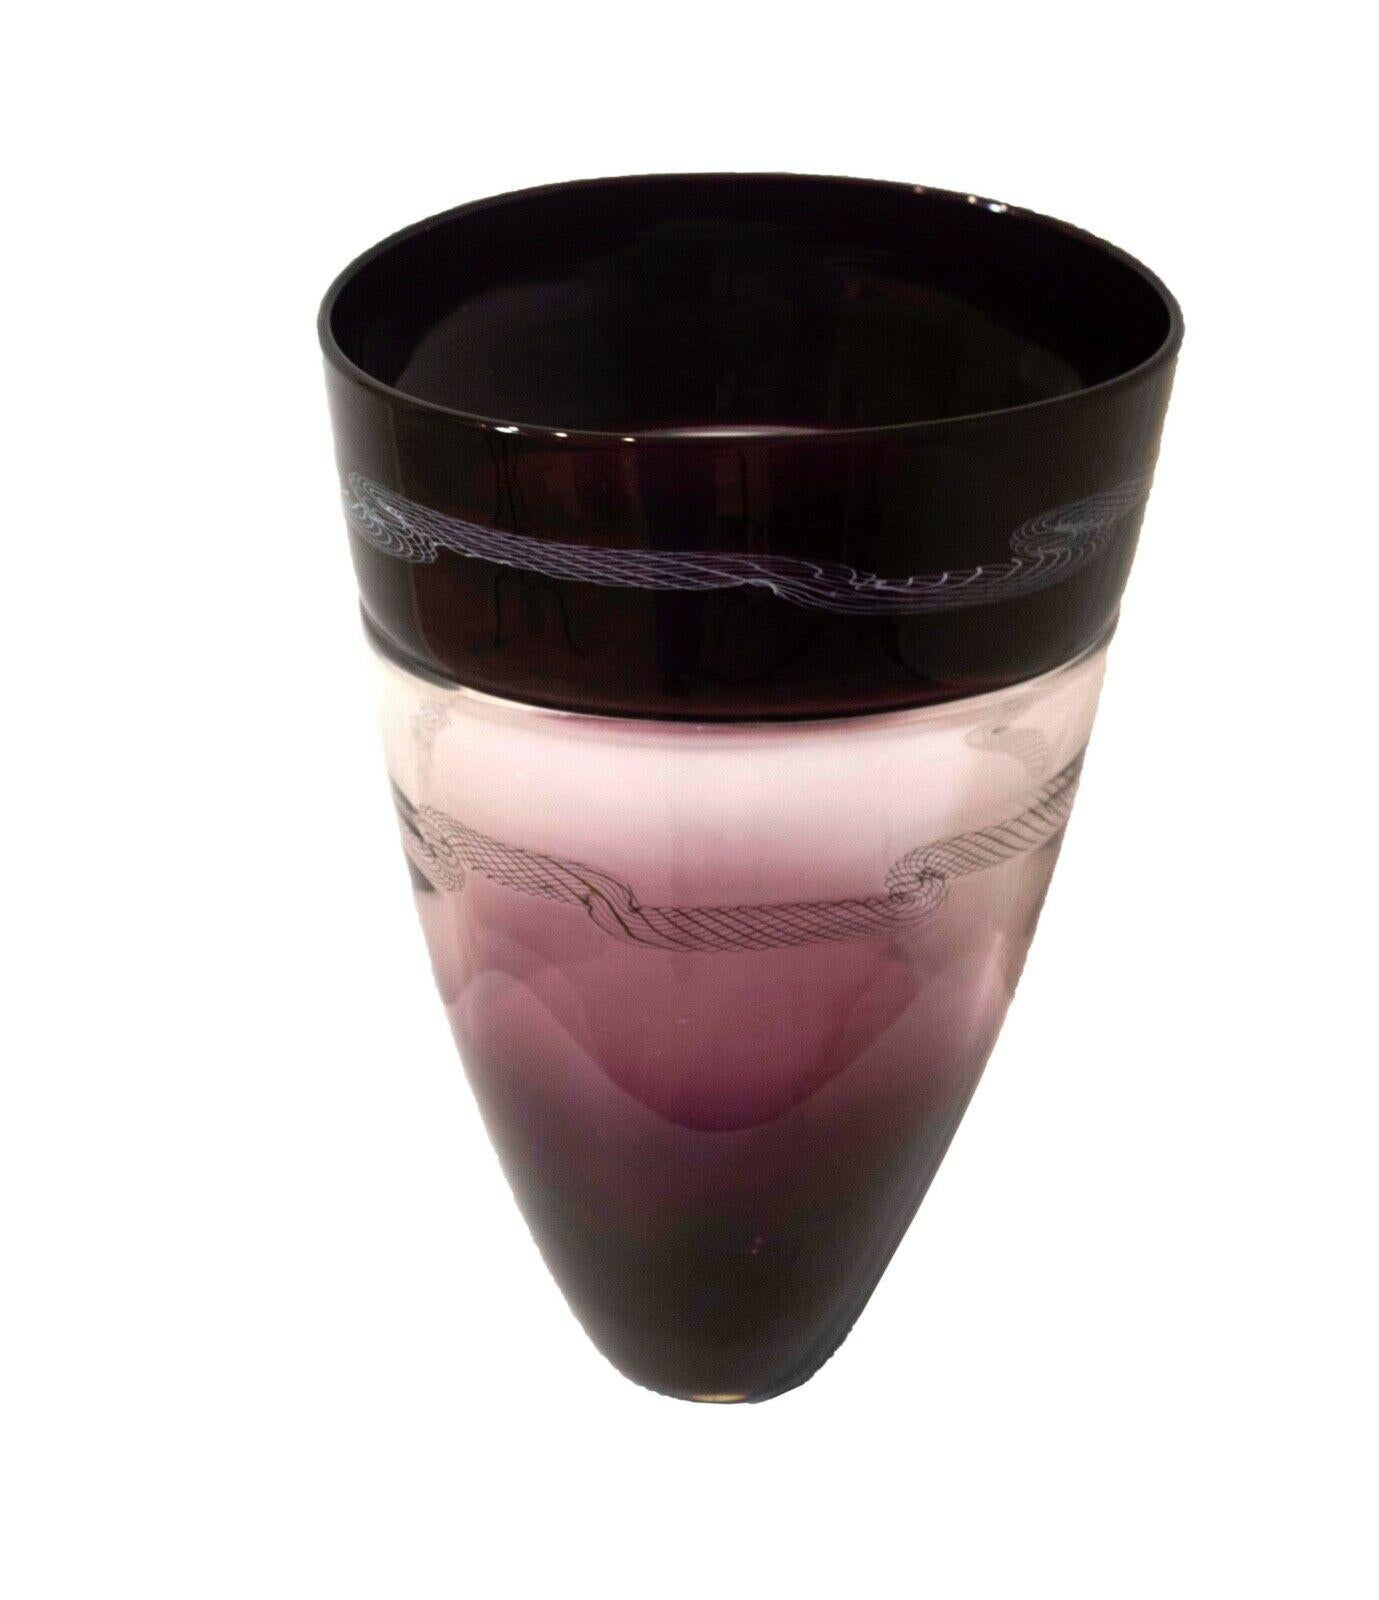 Ein wunderschönes Beispiel von Muranoglas mit dem Titel Cabaret. Diese Vase von Seguso in Hombre Purple enthält zwei seltene Motive in Weiß und Schwarz, die in das Glas geblasen wurden. Unterzeichnet und datiert 1999

Maße: 9.25